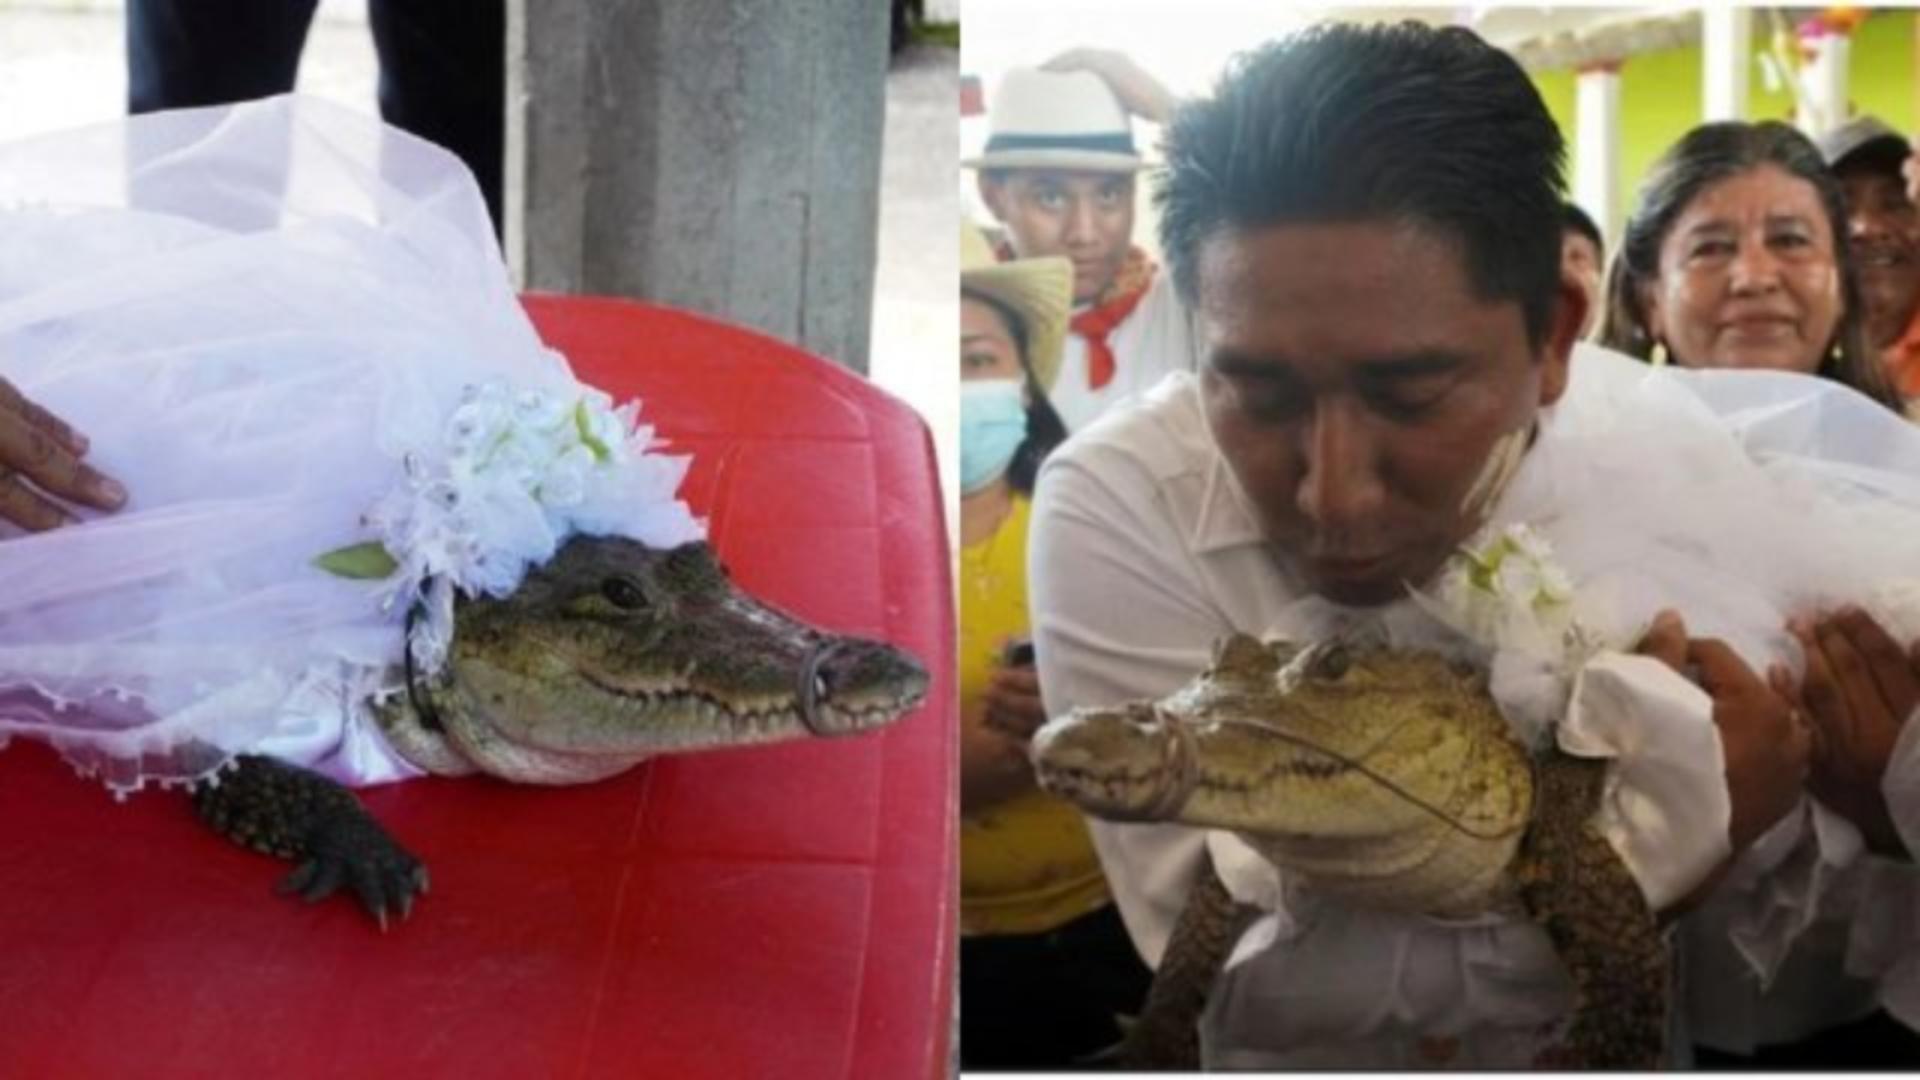 Primarul și crocodilul. Nunta s-a terminat cu bine